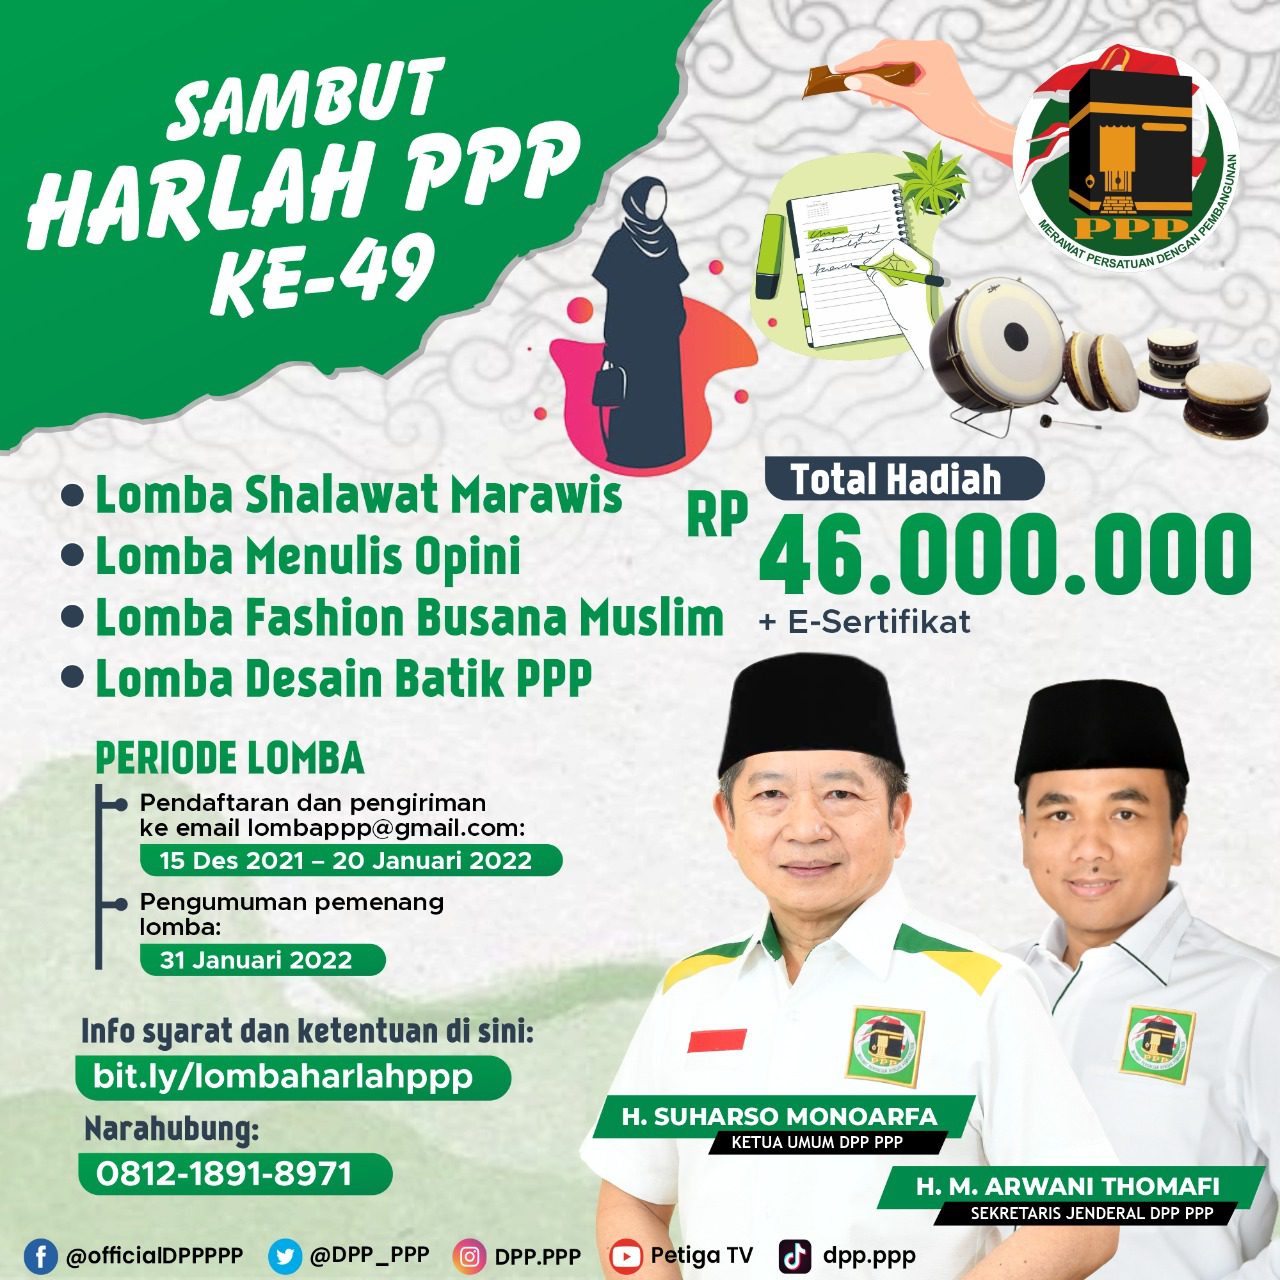 Sambut Harlah ke-49, DPP PPP Gelar Lomba Marawis hingga Desain Batik/Lingkar.co